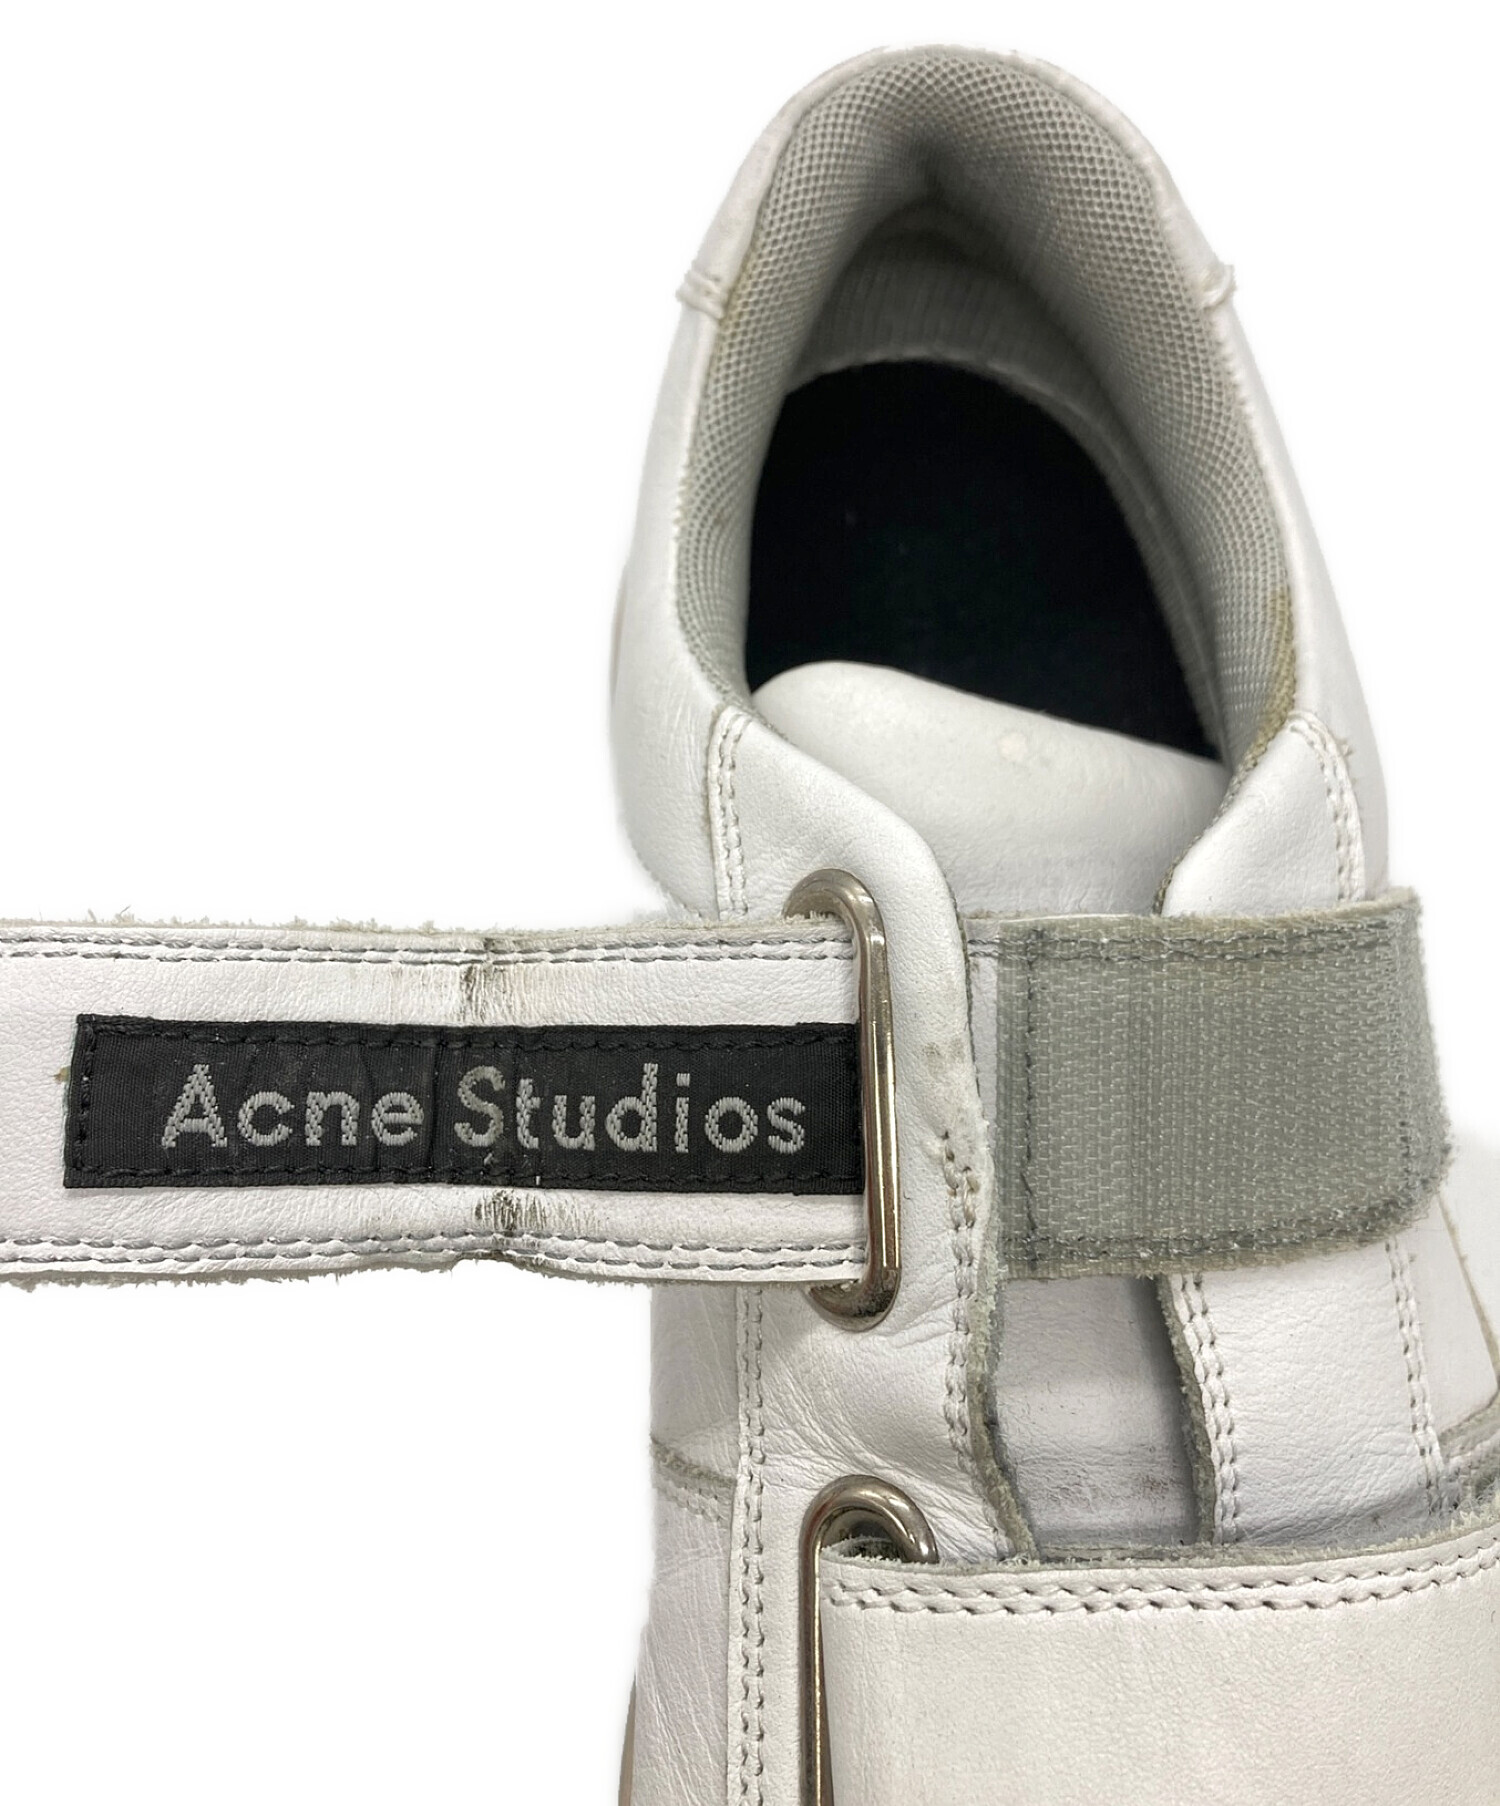 Acne studios (アクネストゥディオス) ベルクロスニーカー ホワイト サイズ:42